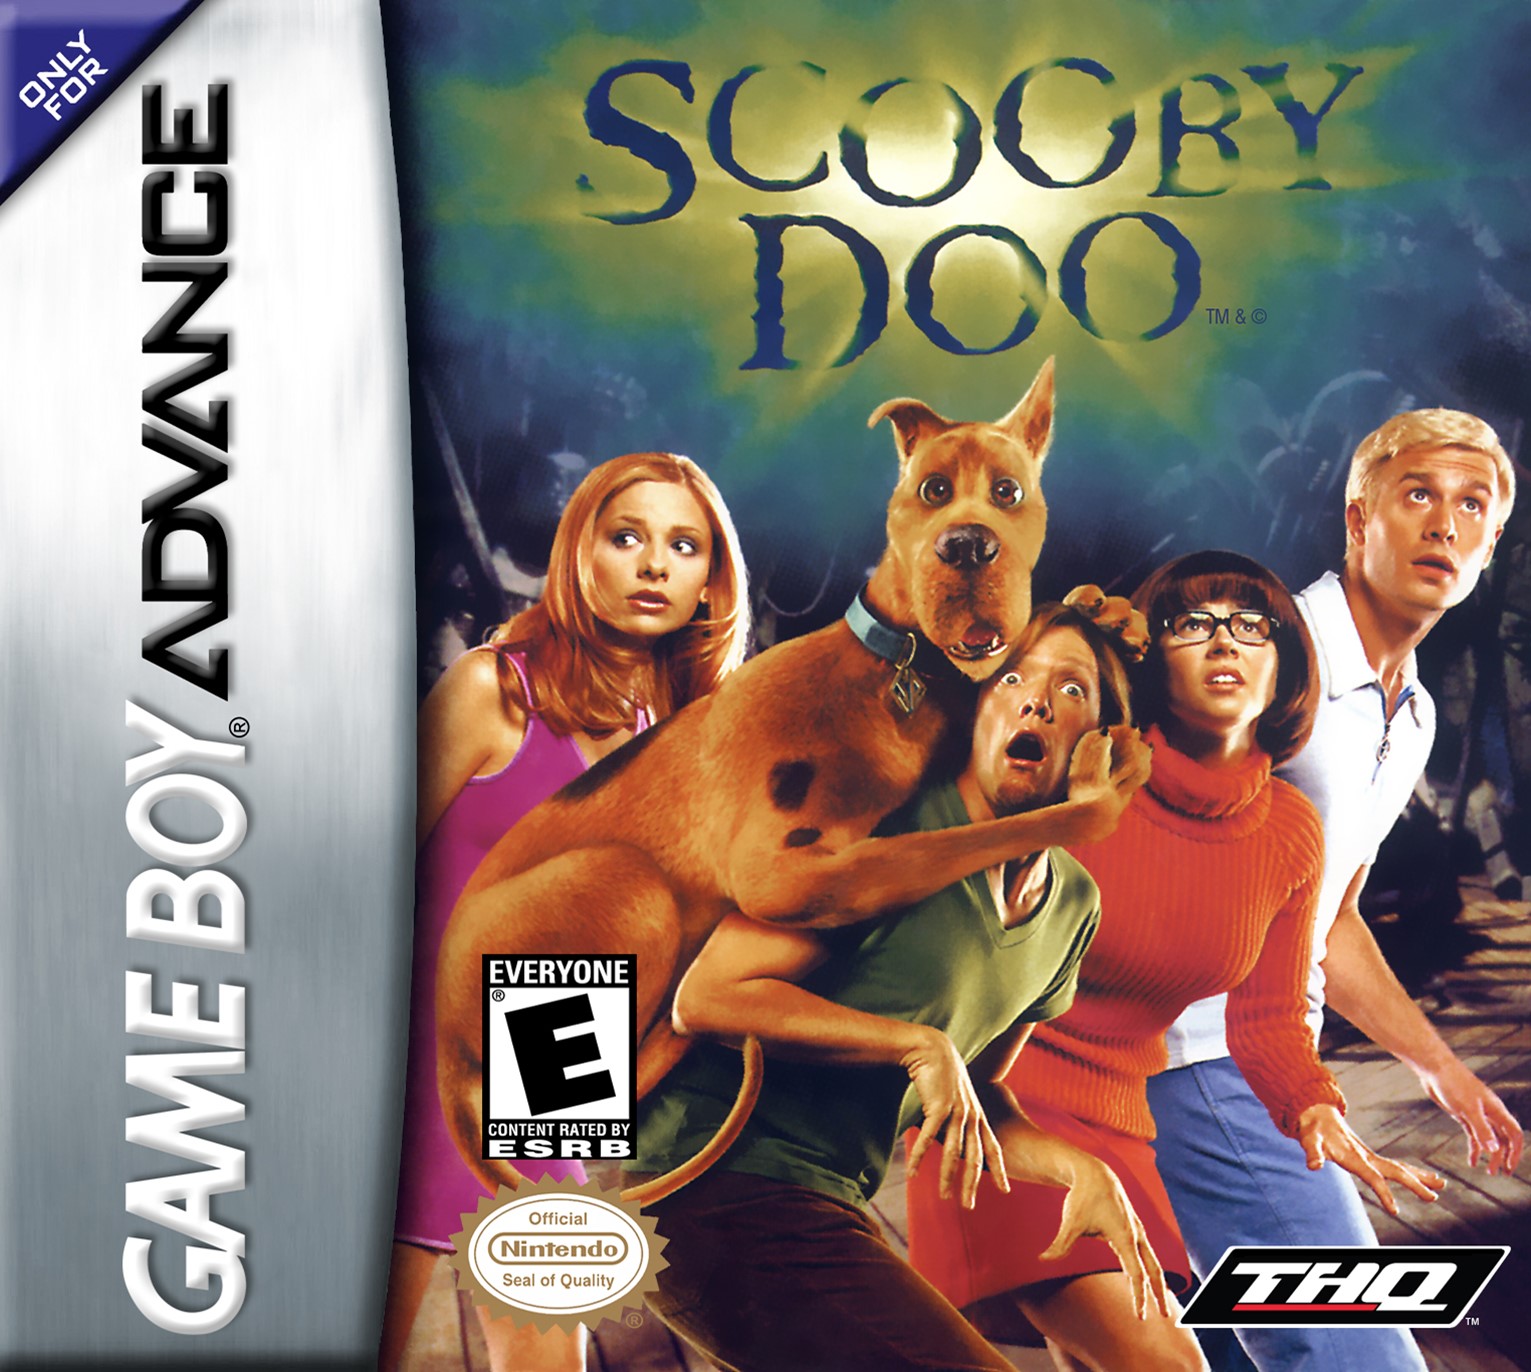 'Scooby Doo 2'